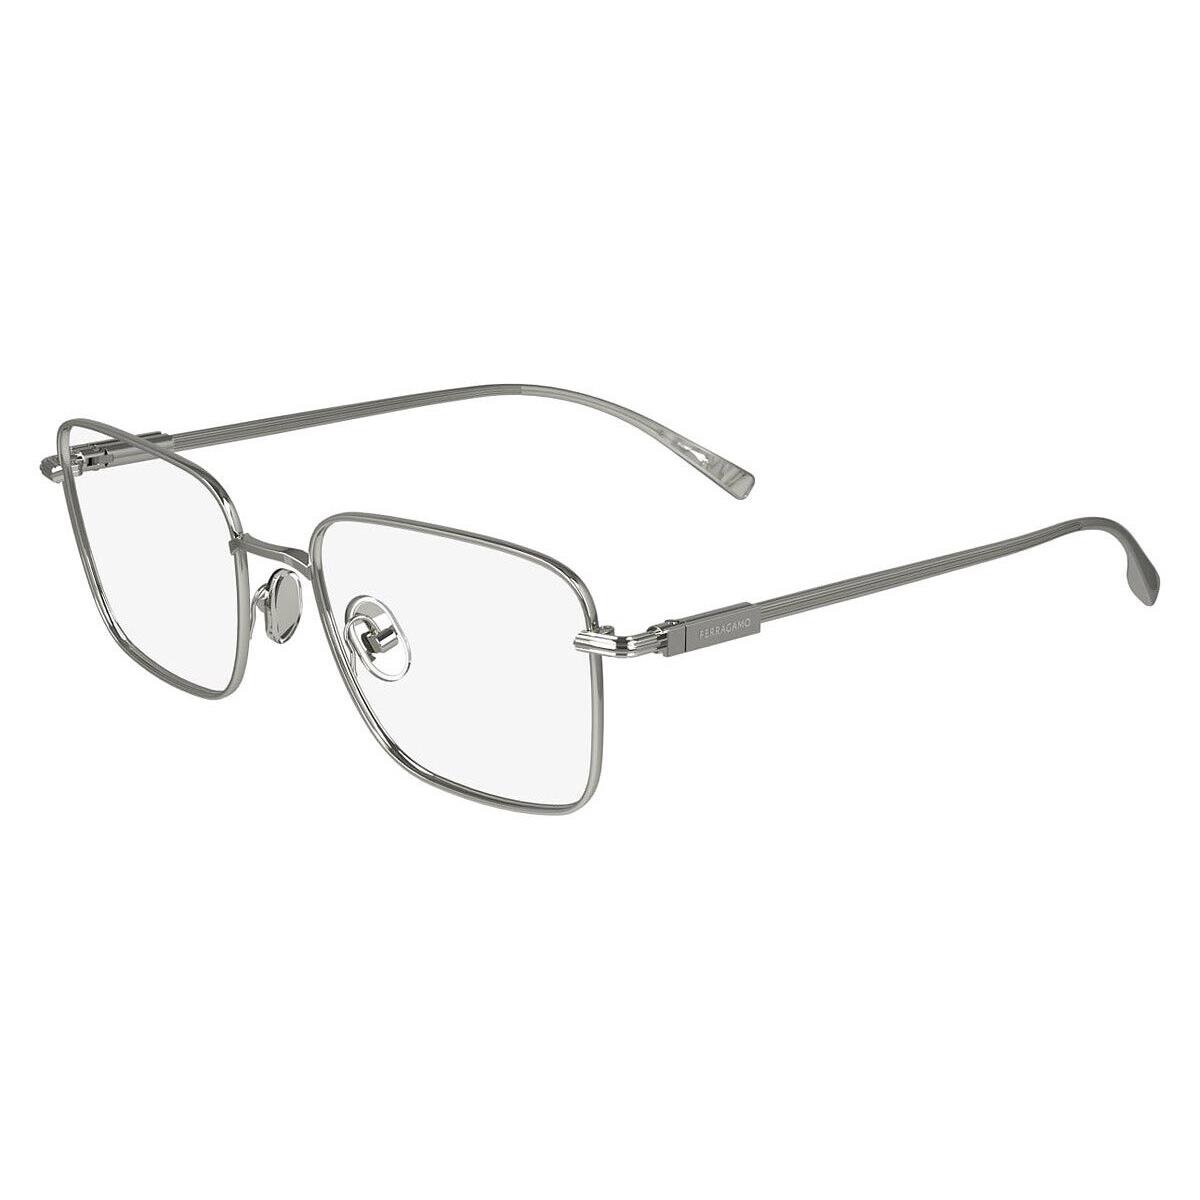 Salvatore Ferragamo SF2231 Eyeglasses Light Ruthenium 53mm